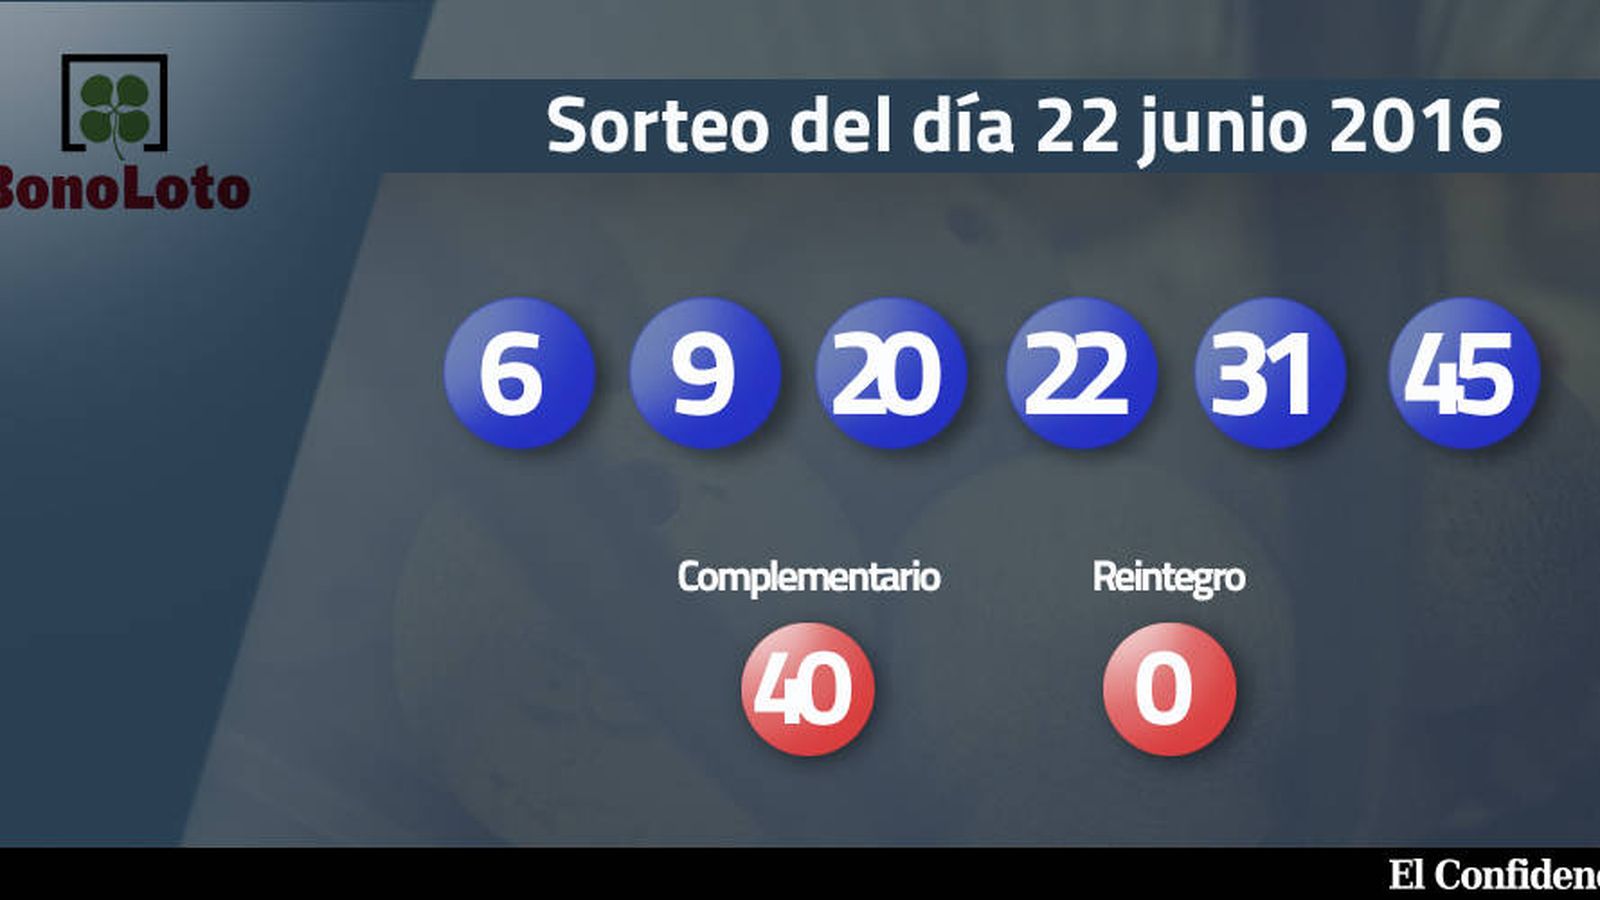 Foto: Resultados del sorteo de la Bonoloto del 22 junio 2016 (EC)